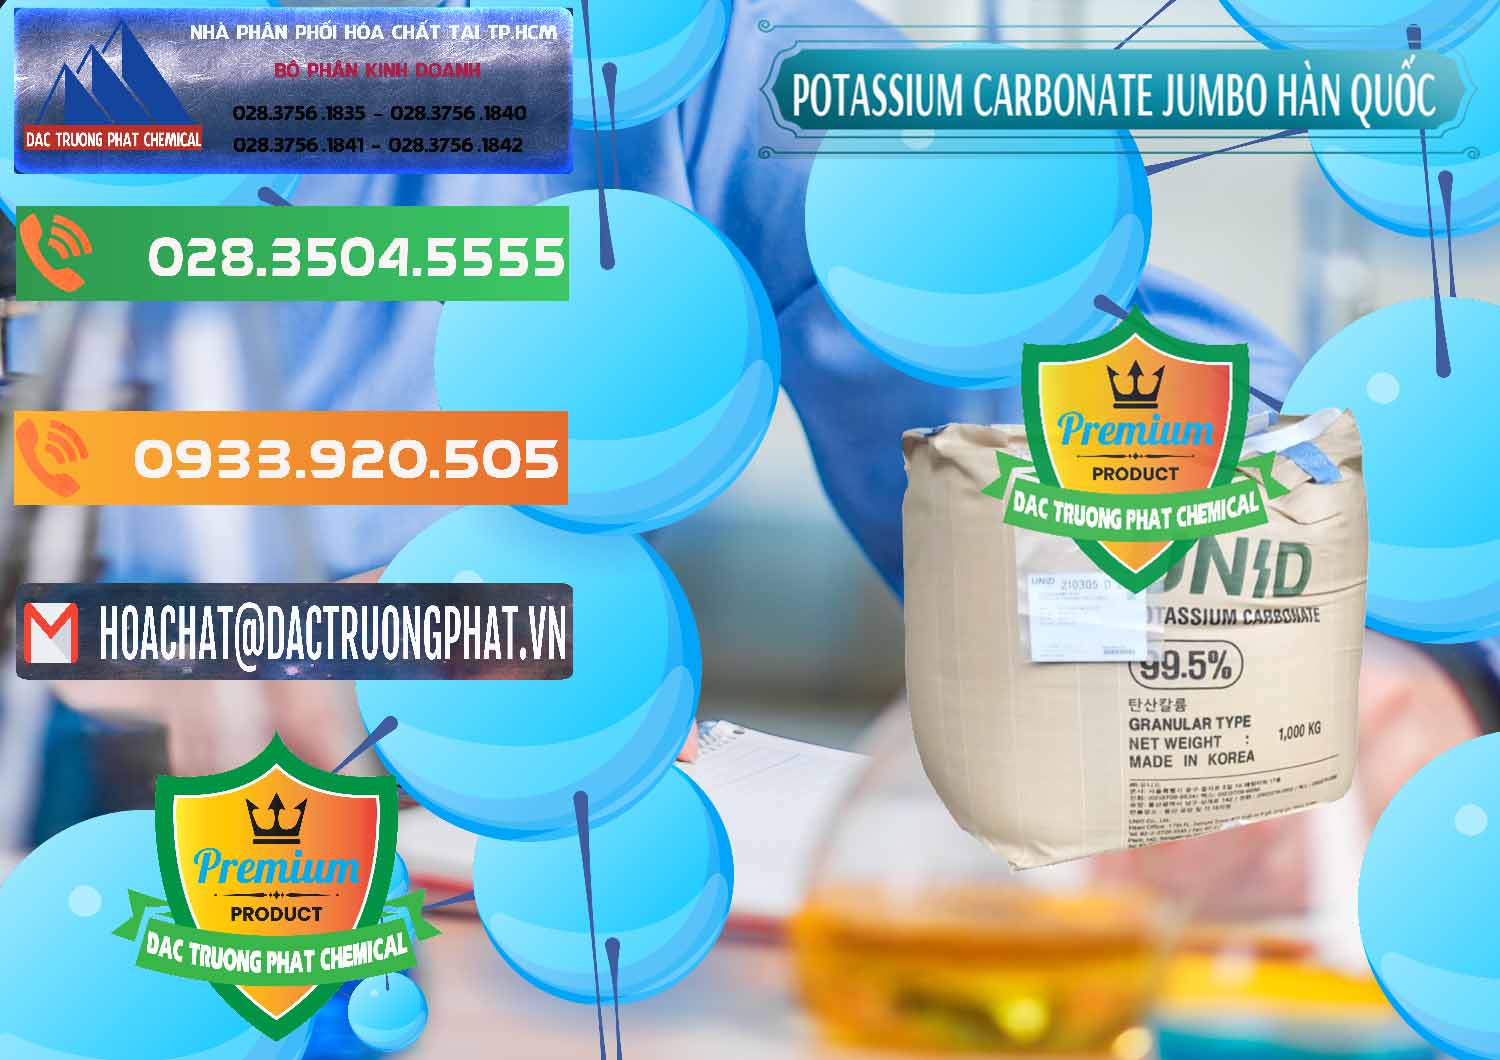 Cty bán _ cung ứng K2Co3 – Potassium Carbonate Jumbo Bành Unid Hàn Quốc Korea - 0434 - Đơn vị chuyên bán và cung cấp hóa chất tại TP.HCM - hoachatxulynuoc.com.vn